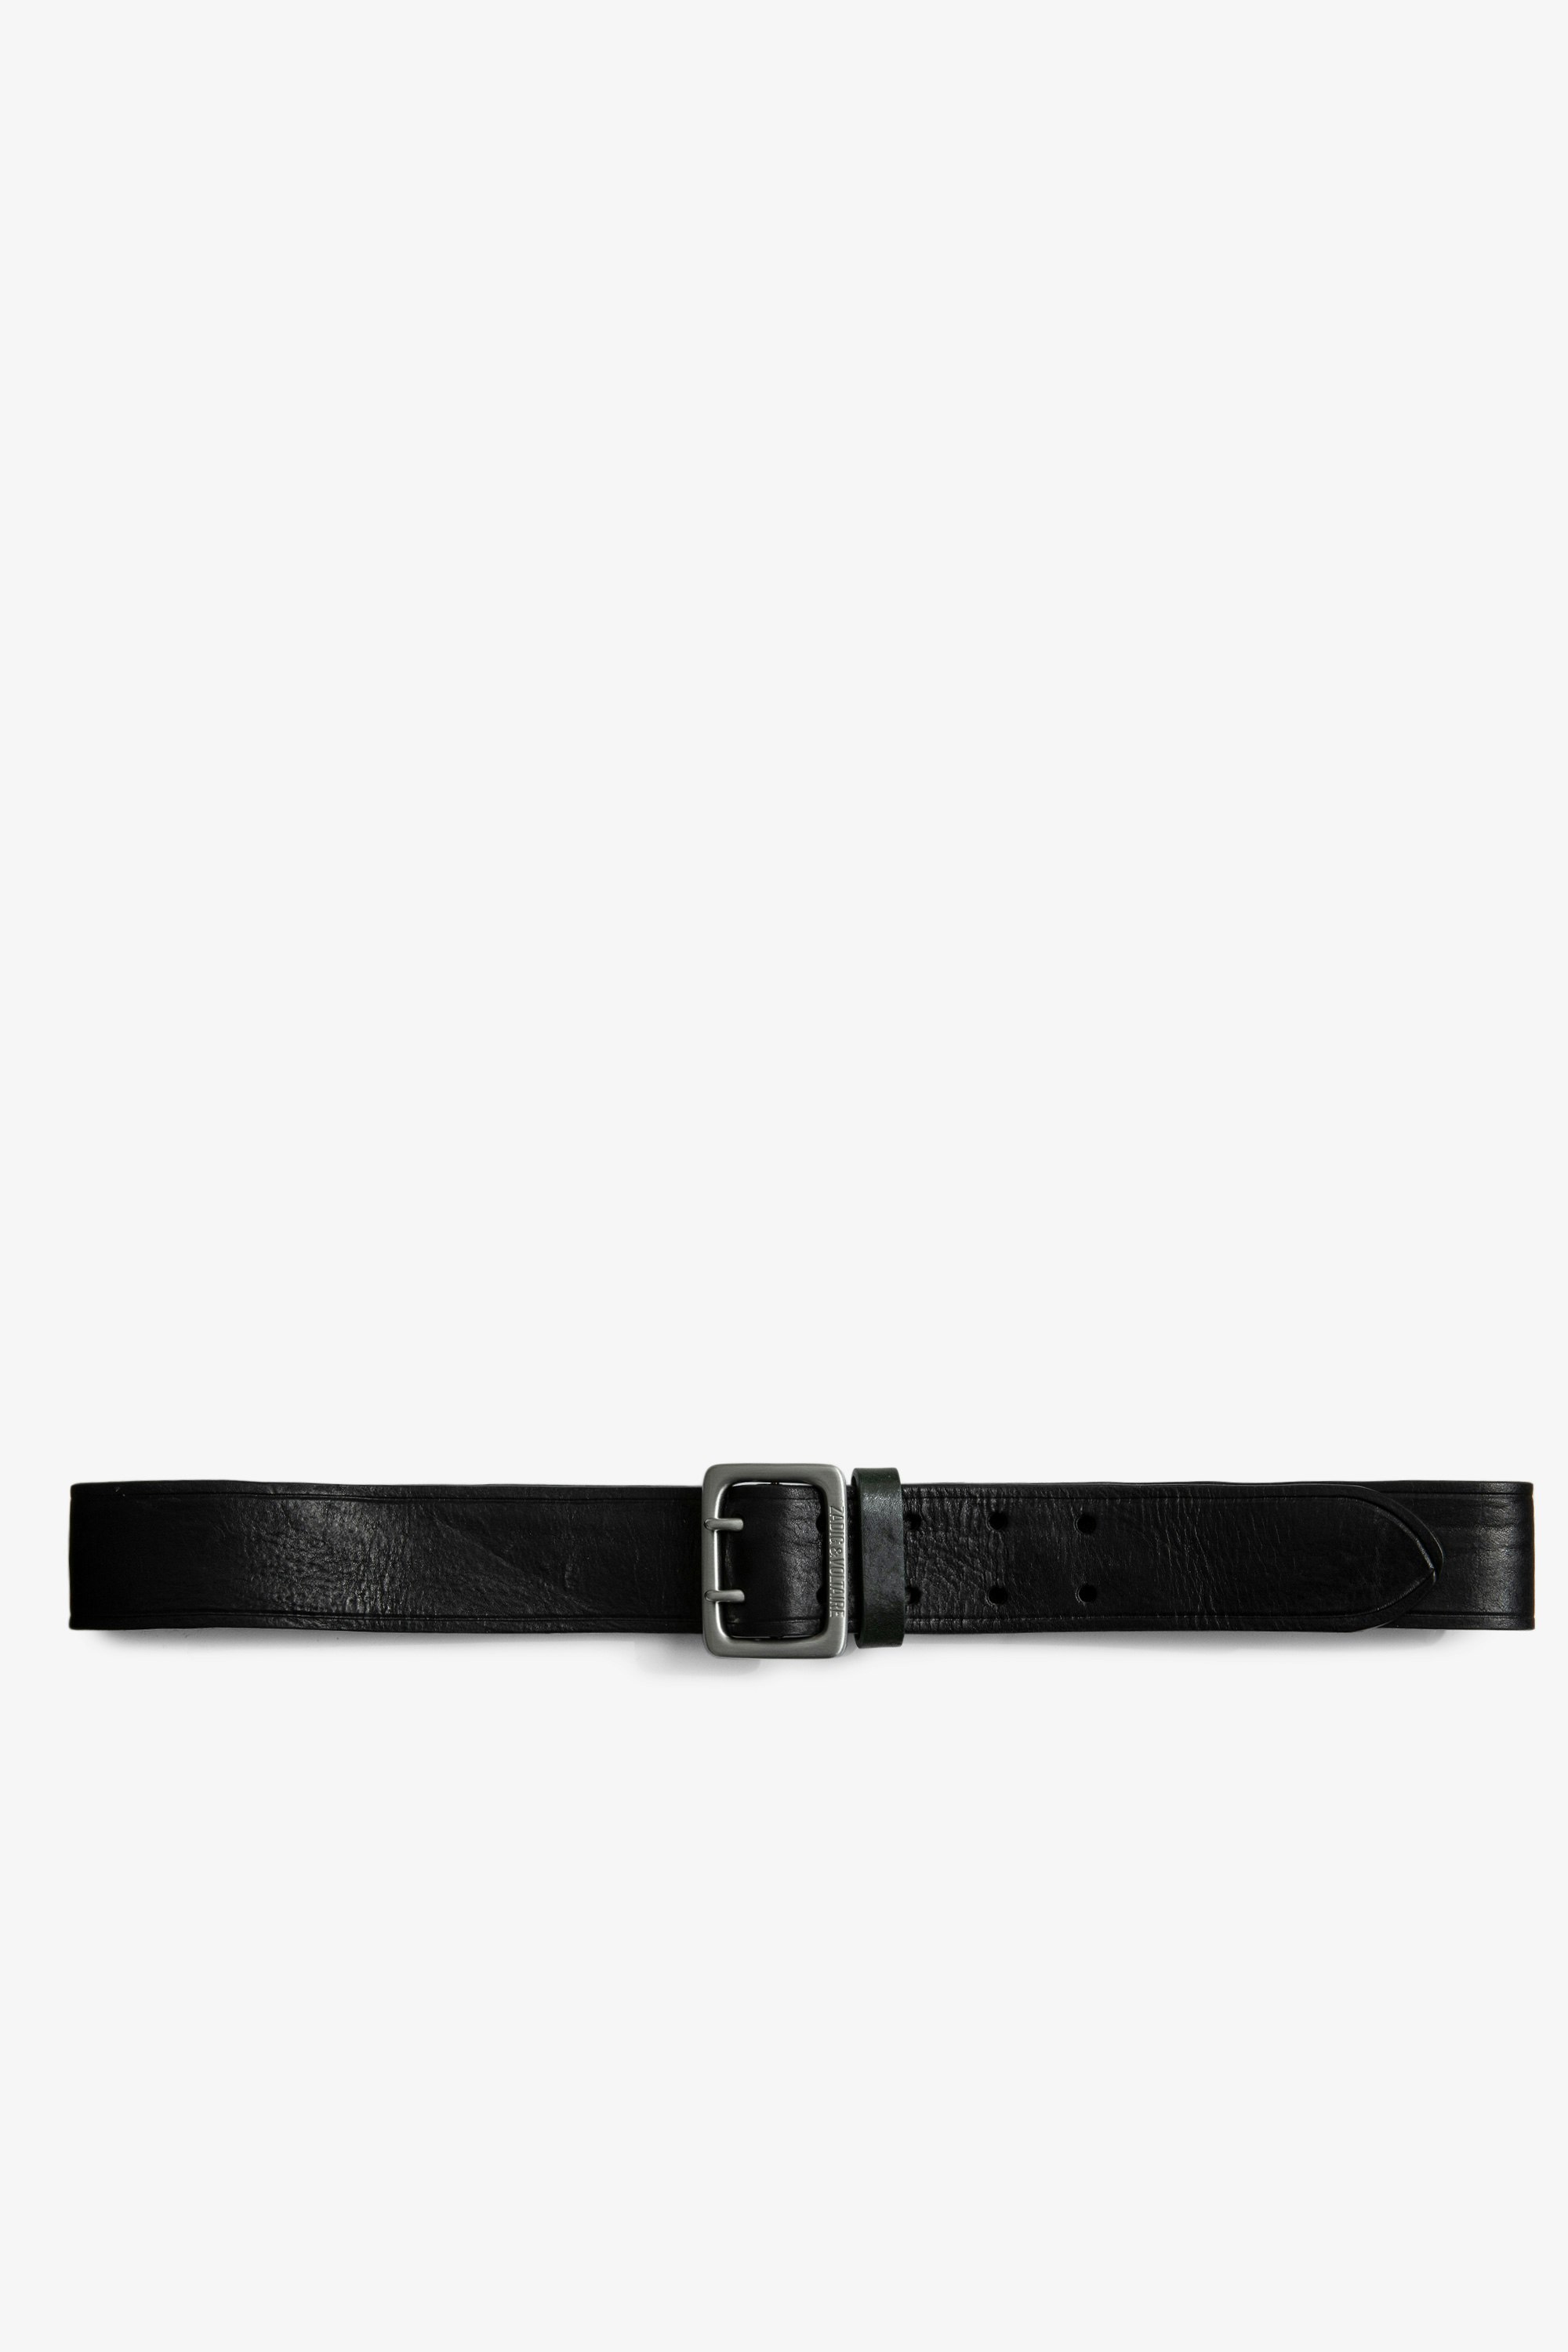 Cinturón Buckley Cuero - Cinturón de hombre de piel negra con hebilla plateada